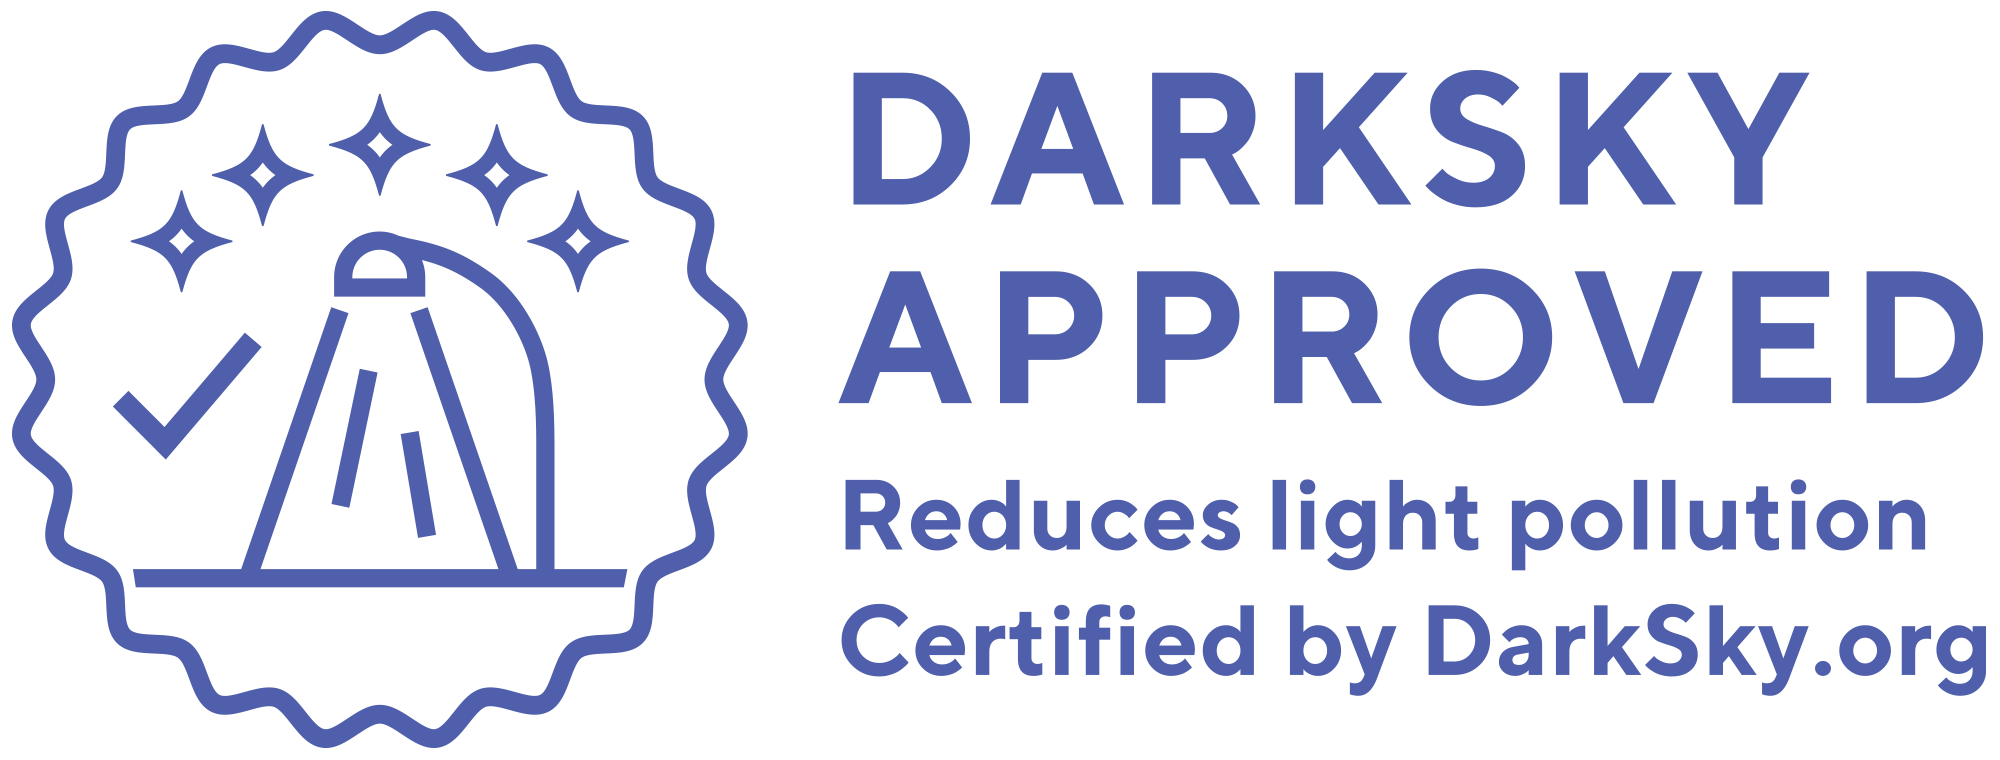 DarkSky-Approved-secondarylogo-horiz-blue-2000x760